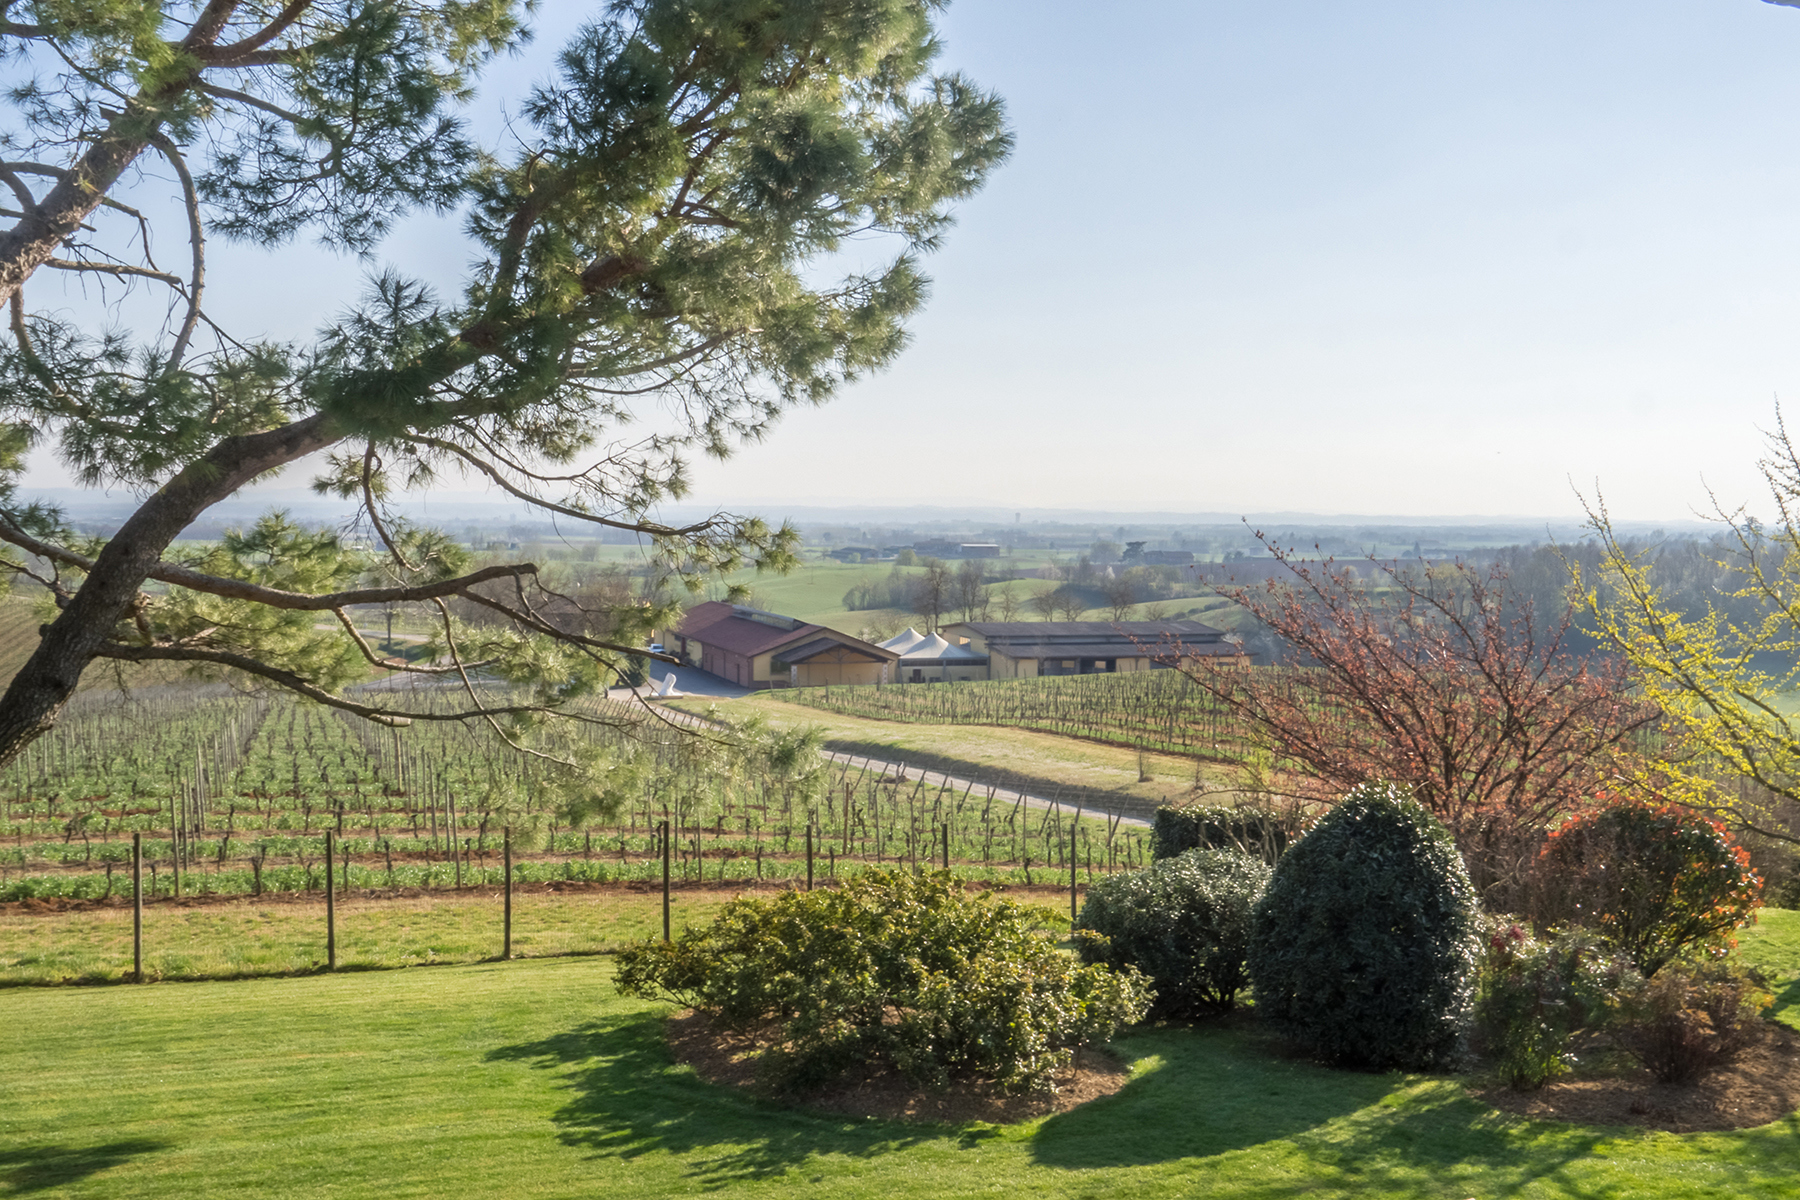 Magnificent wine producing estate in the heart of Monferrato region